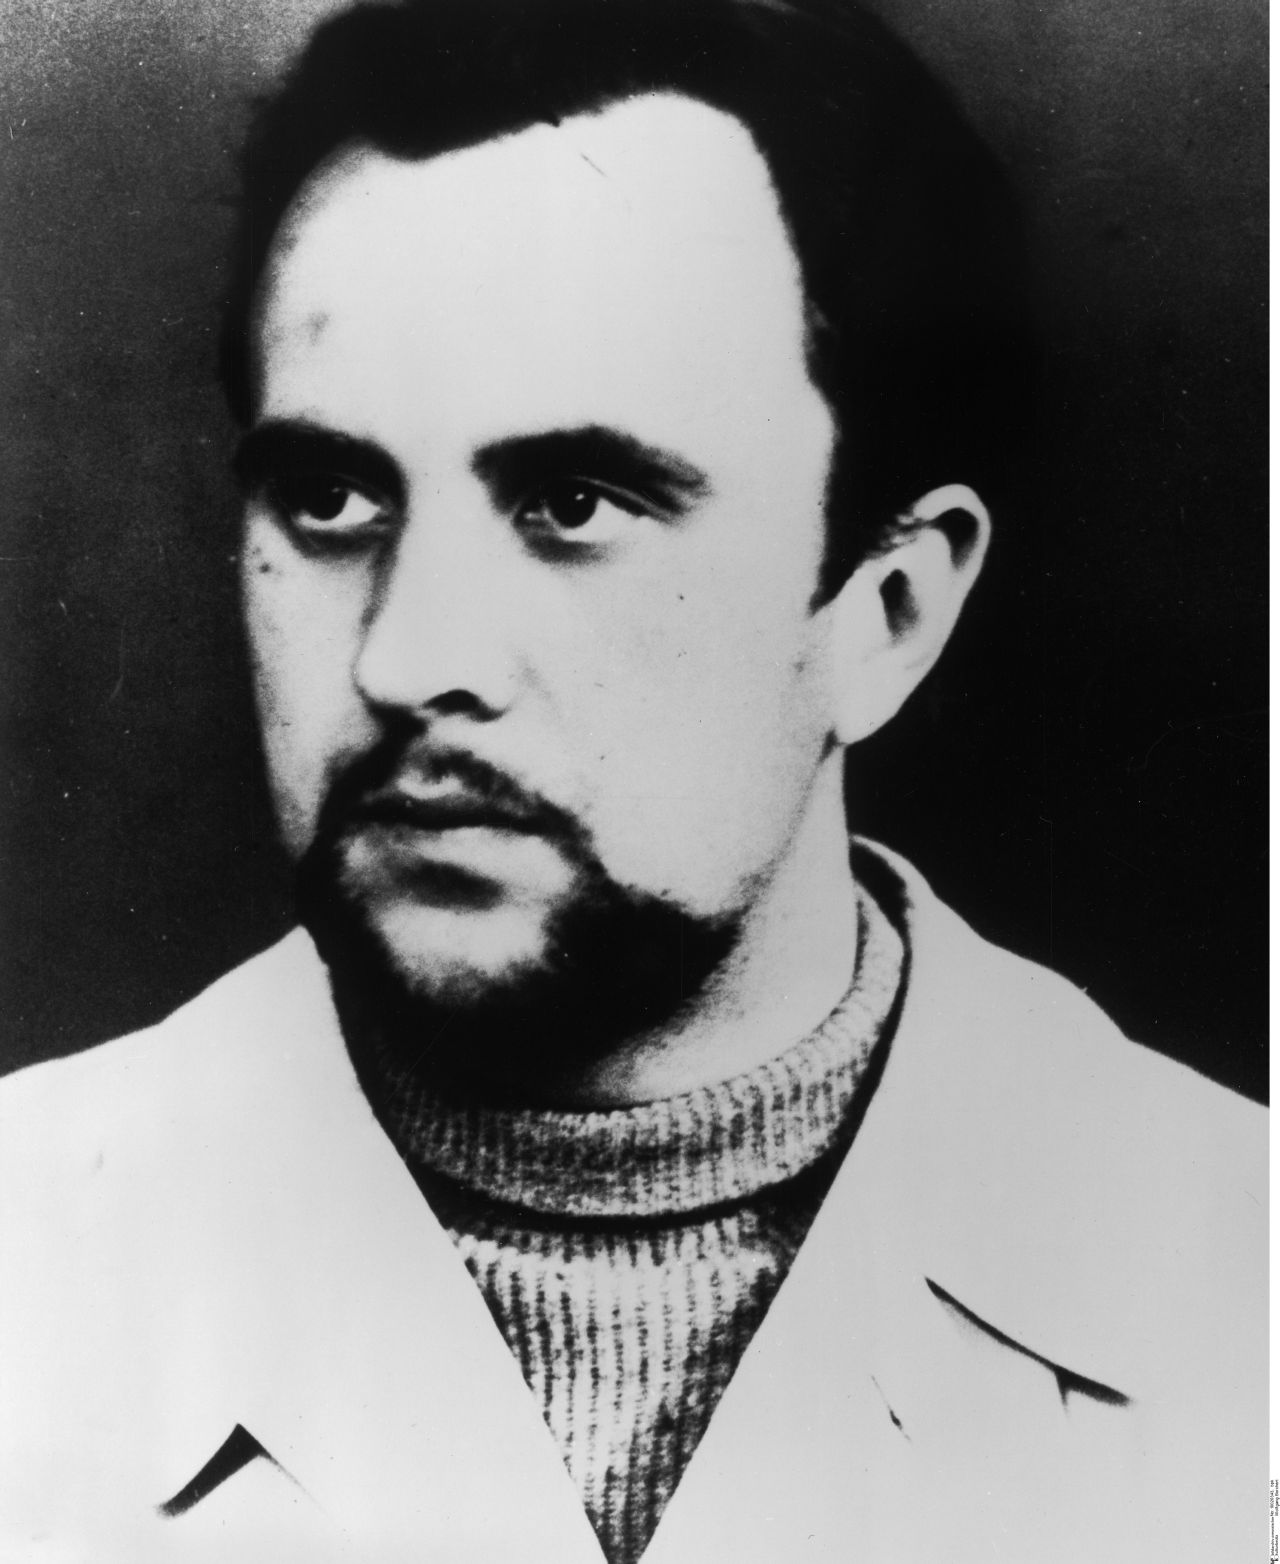 Porträtfoto des Schriftstellers Wolfgang Borchert, 1945